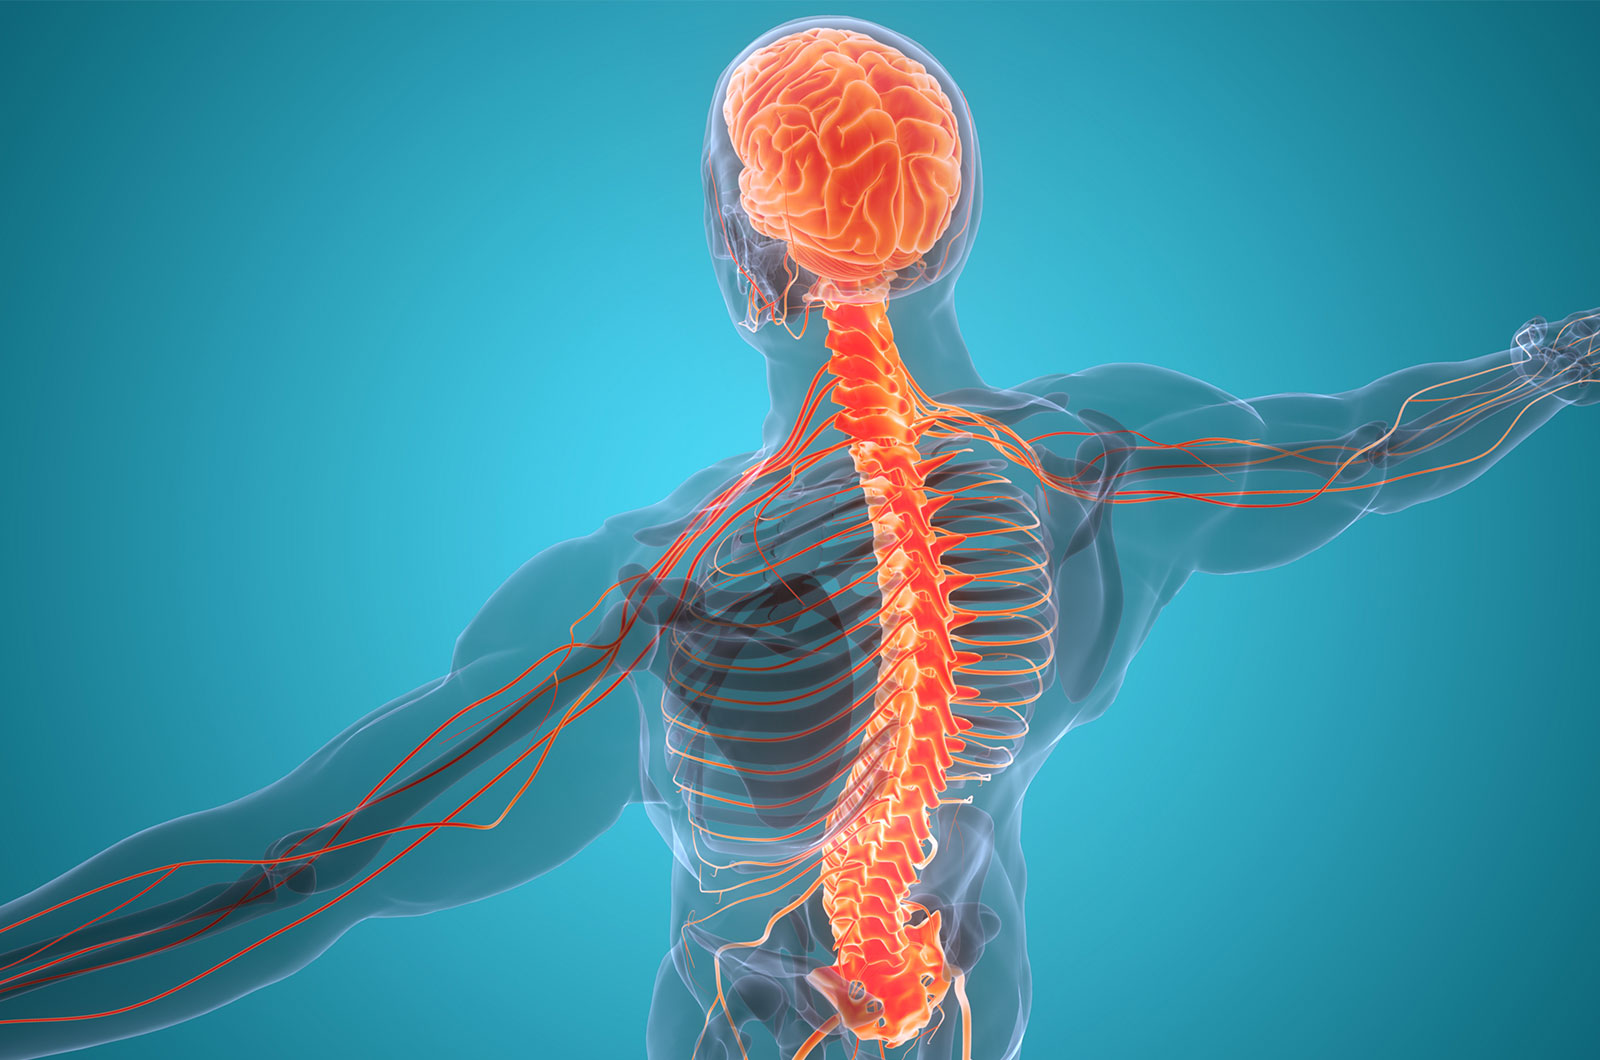 Anatomie eines Menschen mit Darstellung der Nervenzellen, Rückenmark